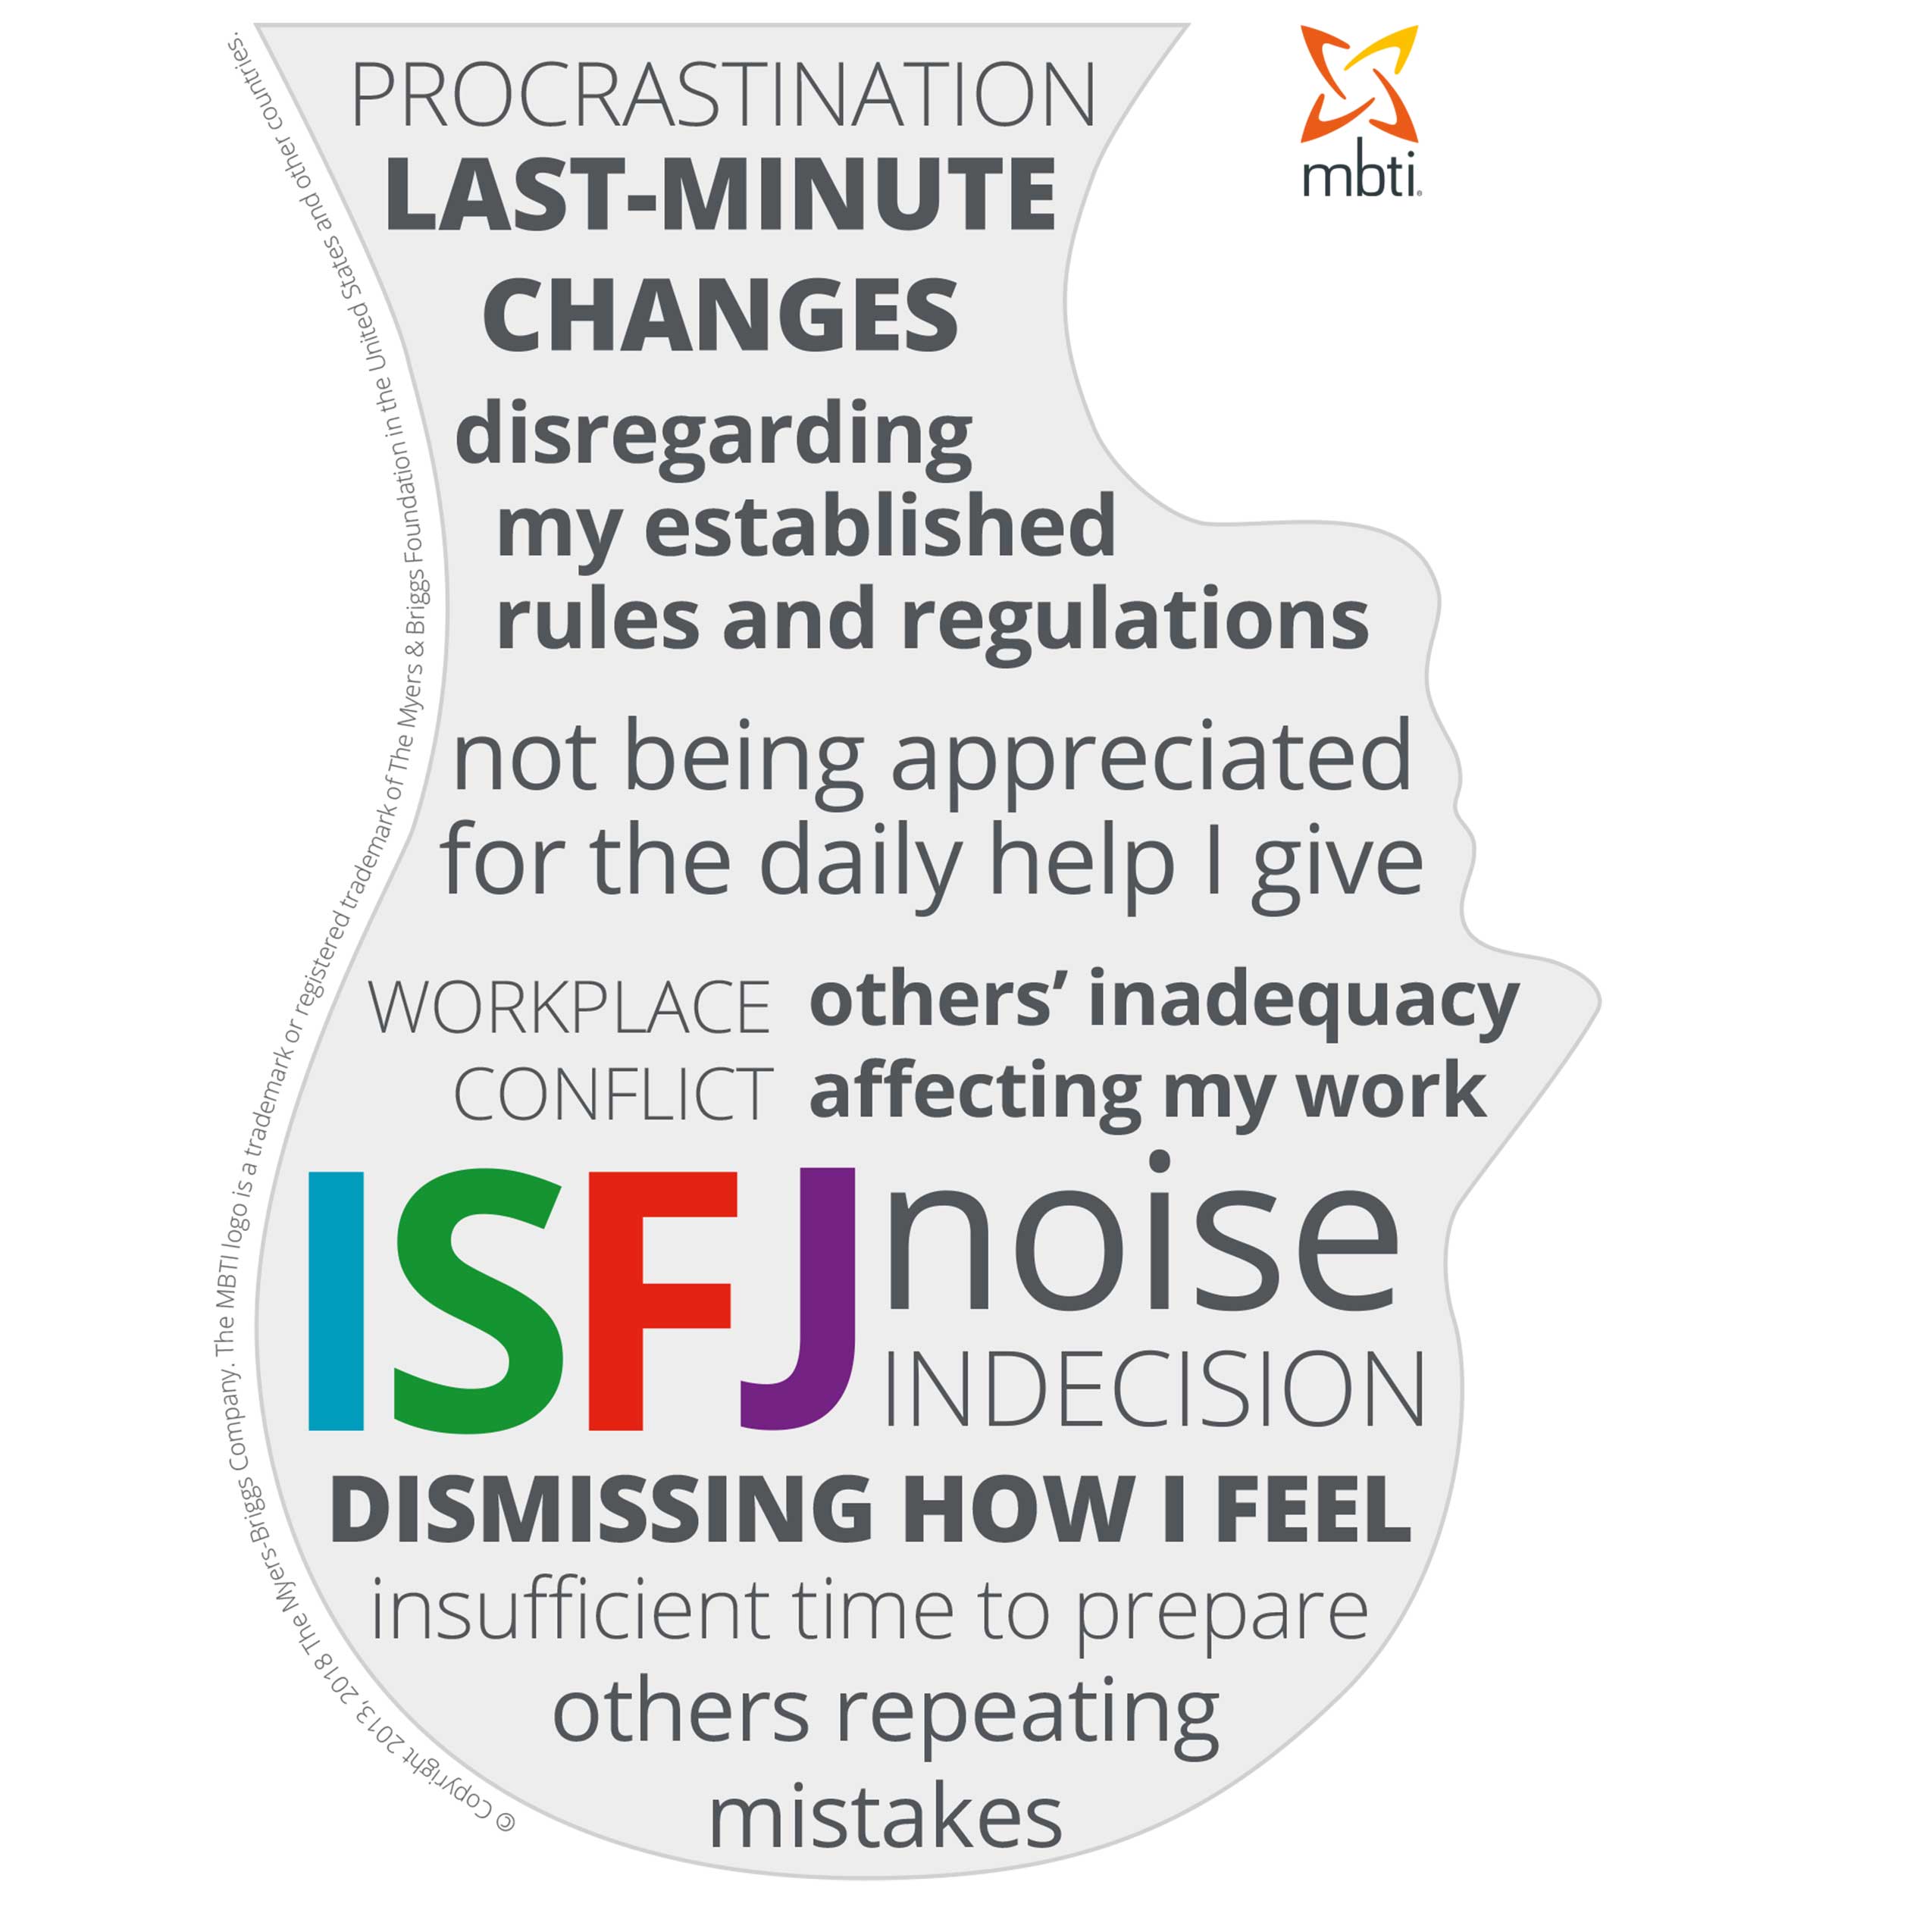 ISFJ stressors